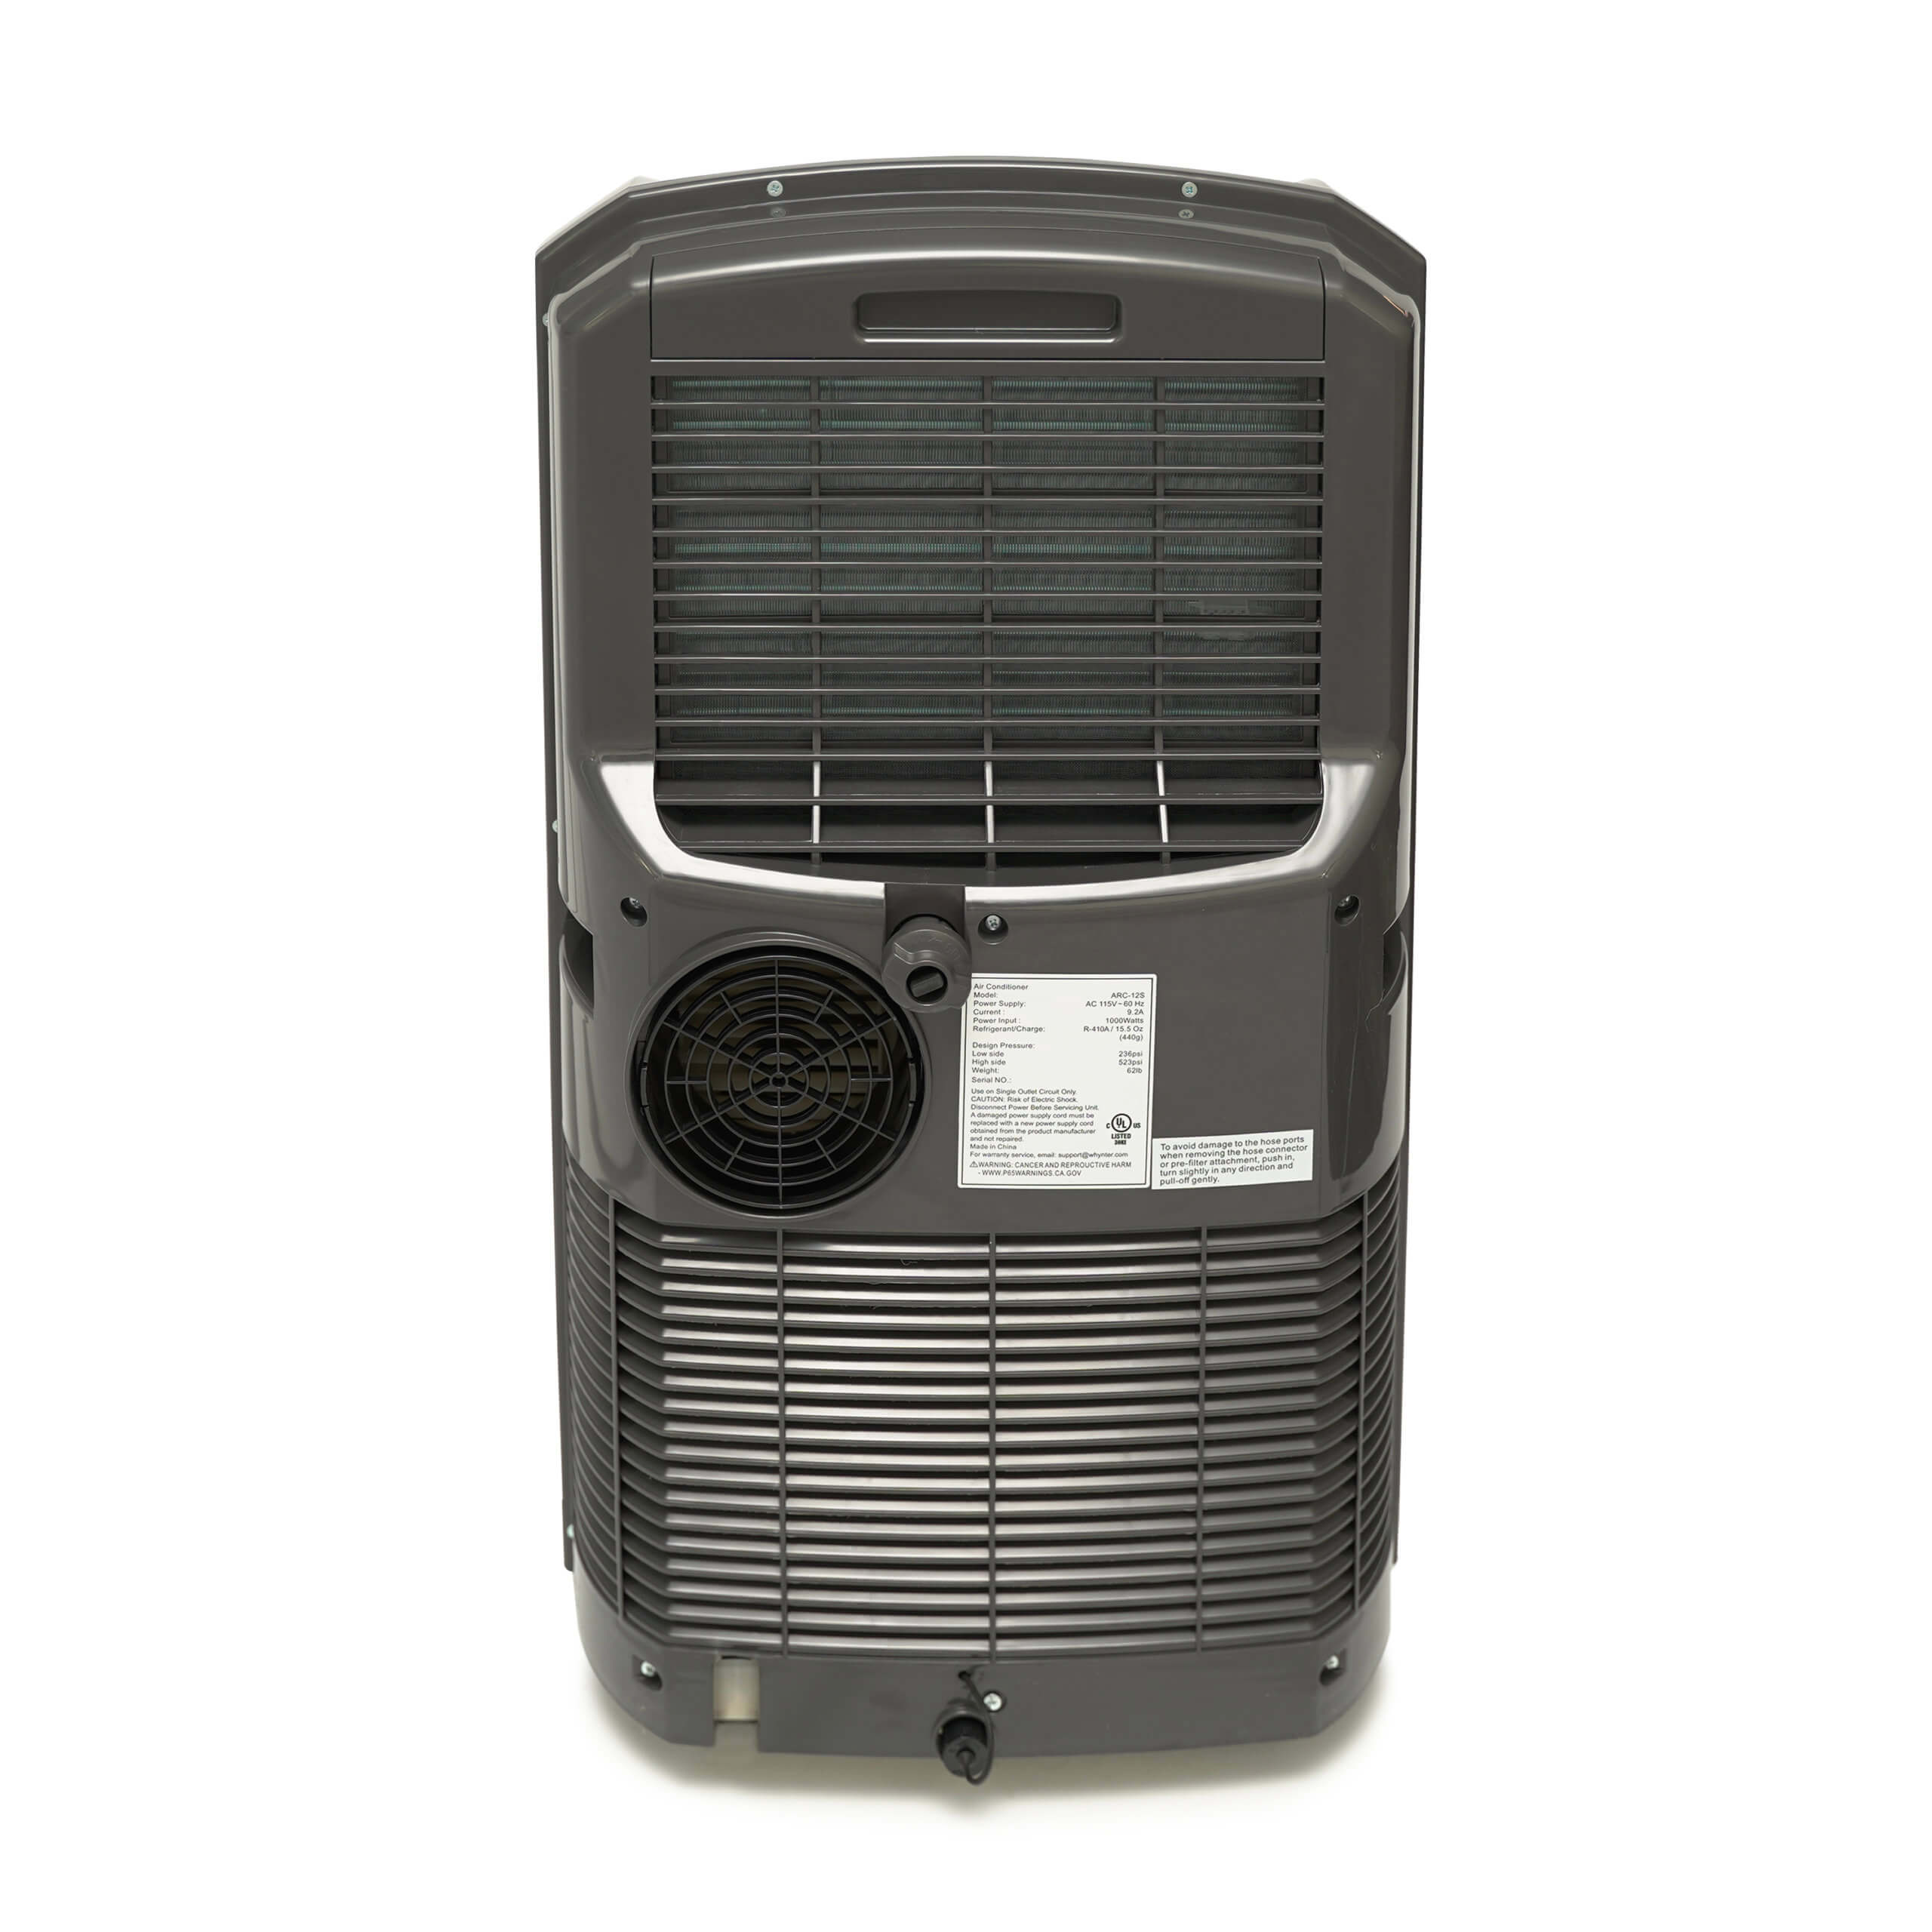  Whynter aire acondicionado portátil con calentador, 12 000 BTU,  blanco helado, (ARC-12SDH) : Todo lo demás